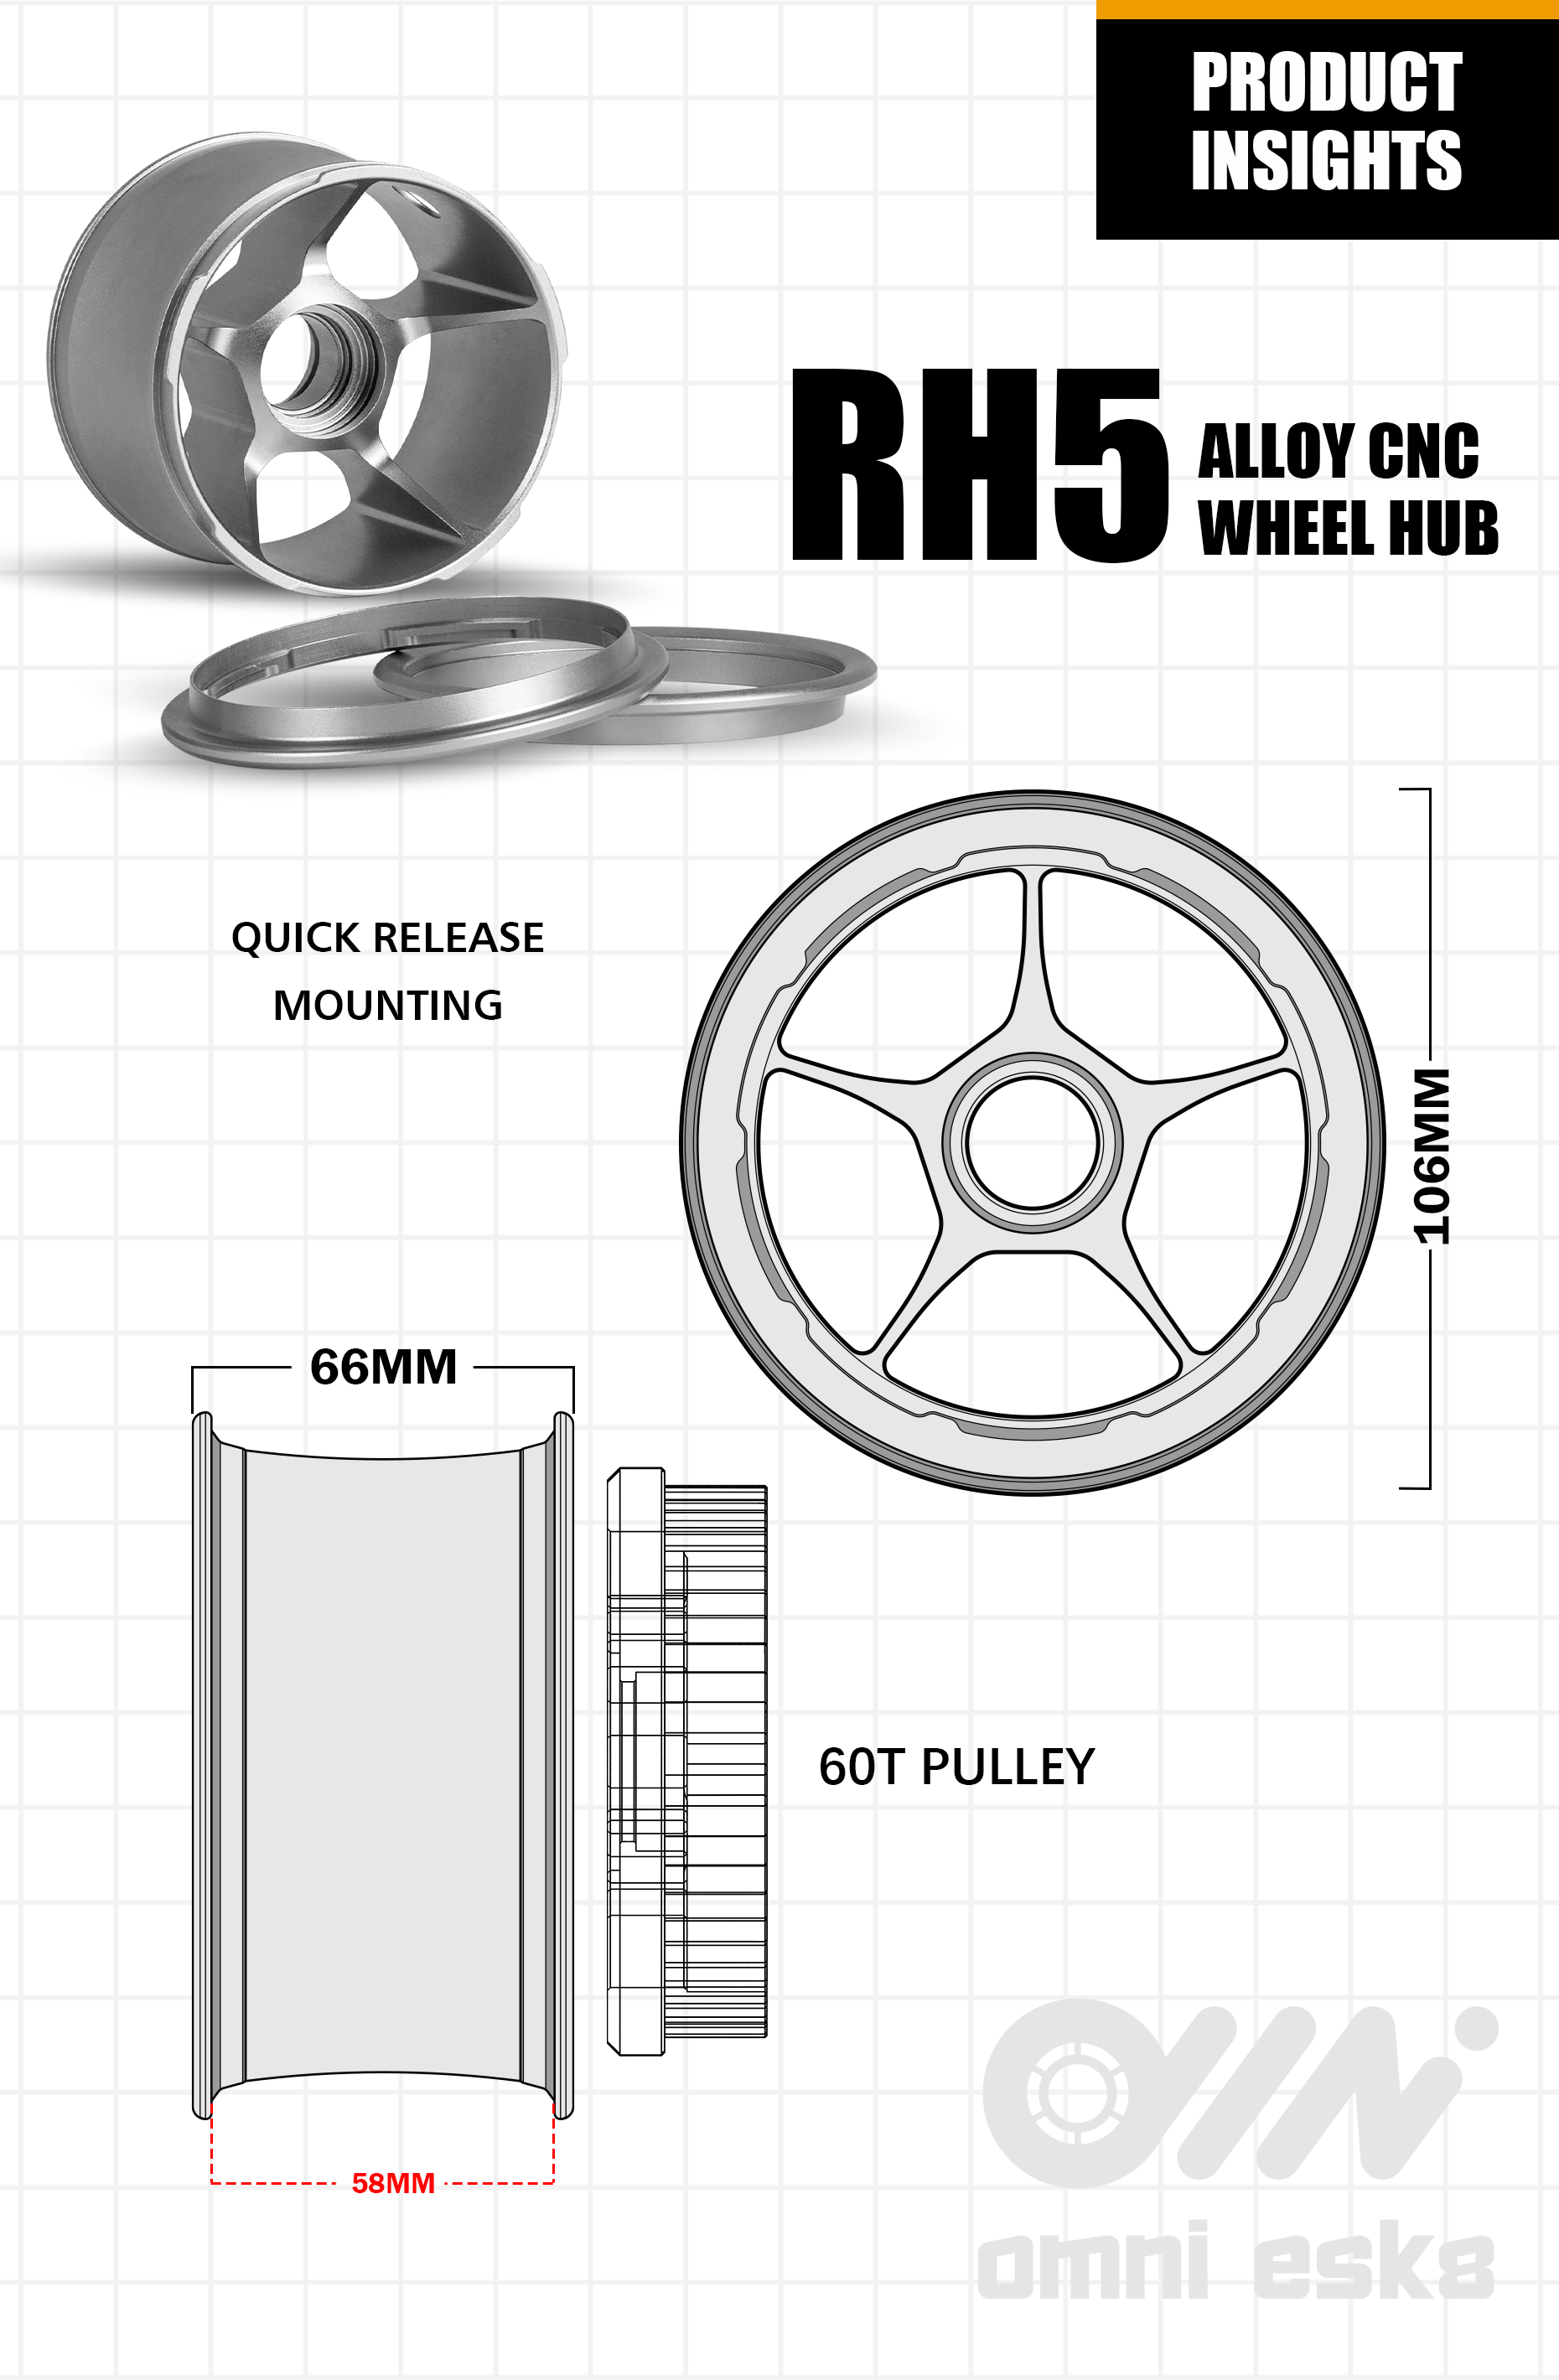 Omni Esk8 RH5 Alloy CNC Wheel Hub